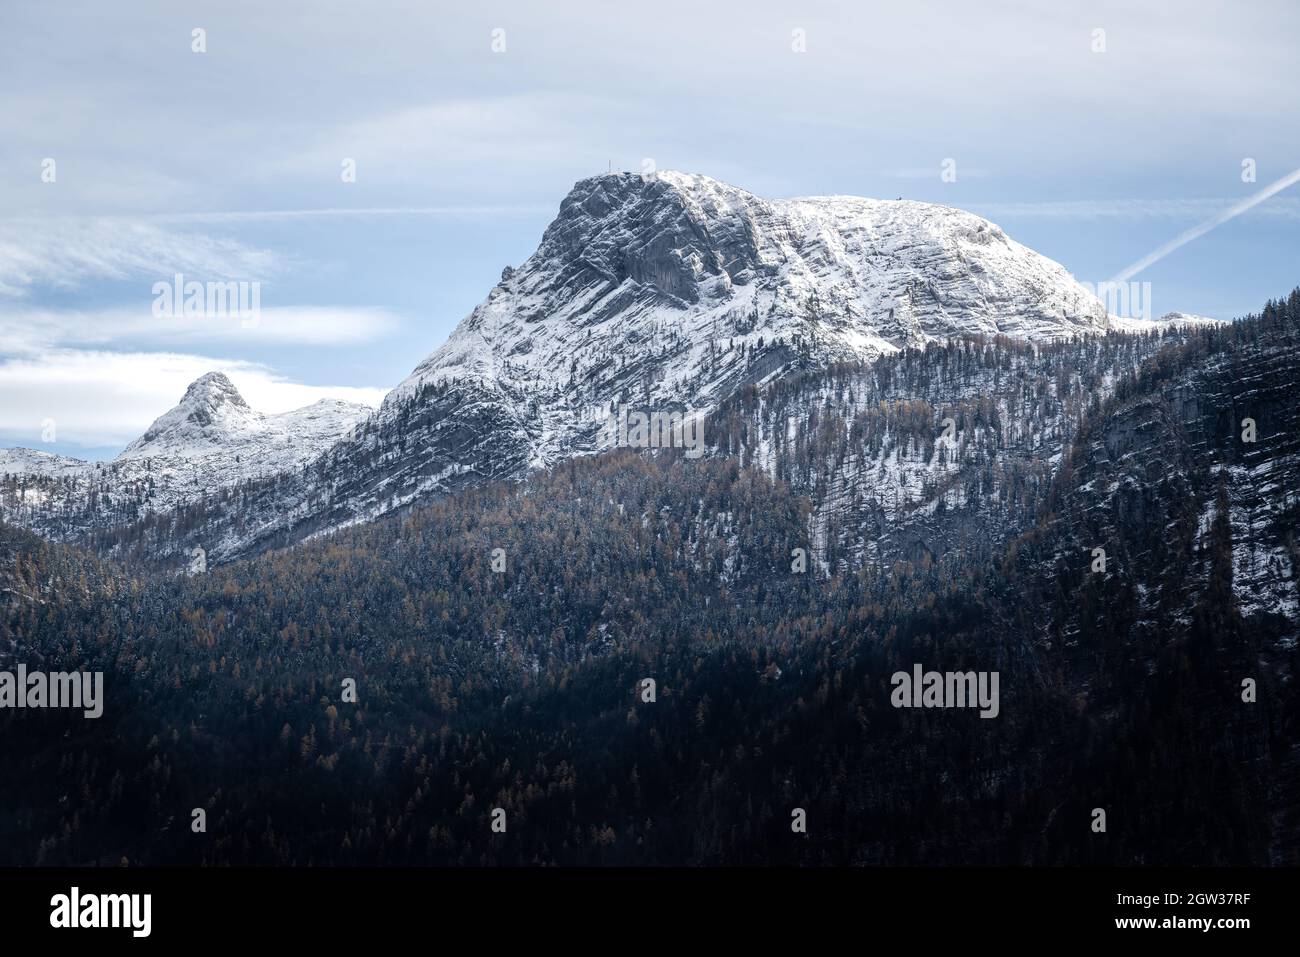 Mount Krippenstein part of Dachstein Mountains - Hallstatt, Austria Stock Photo